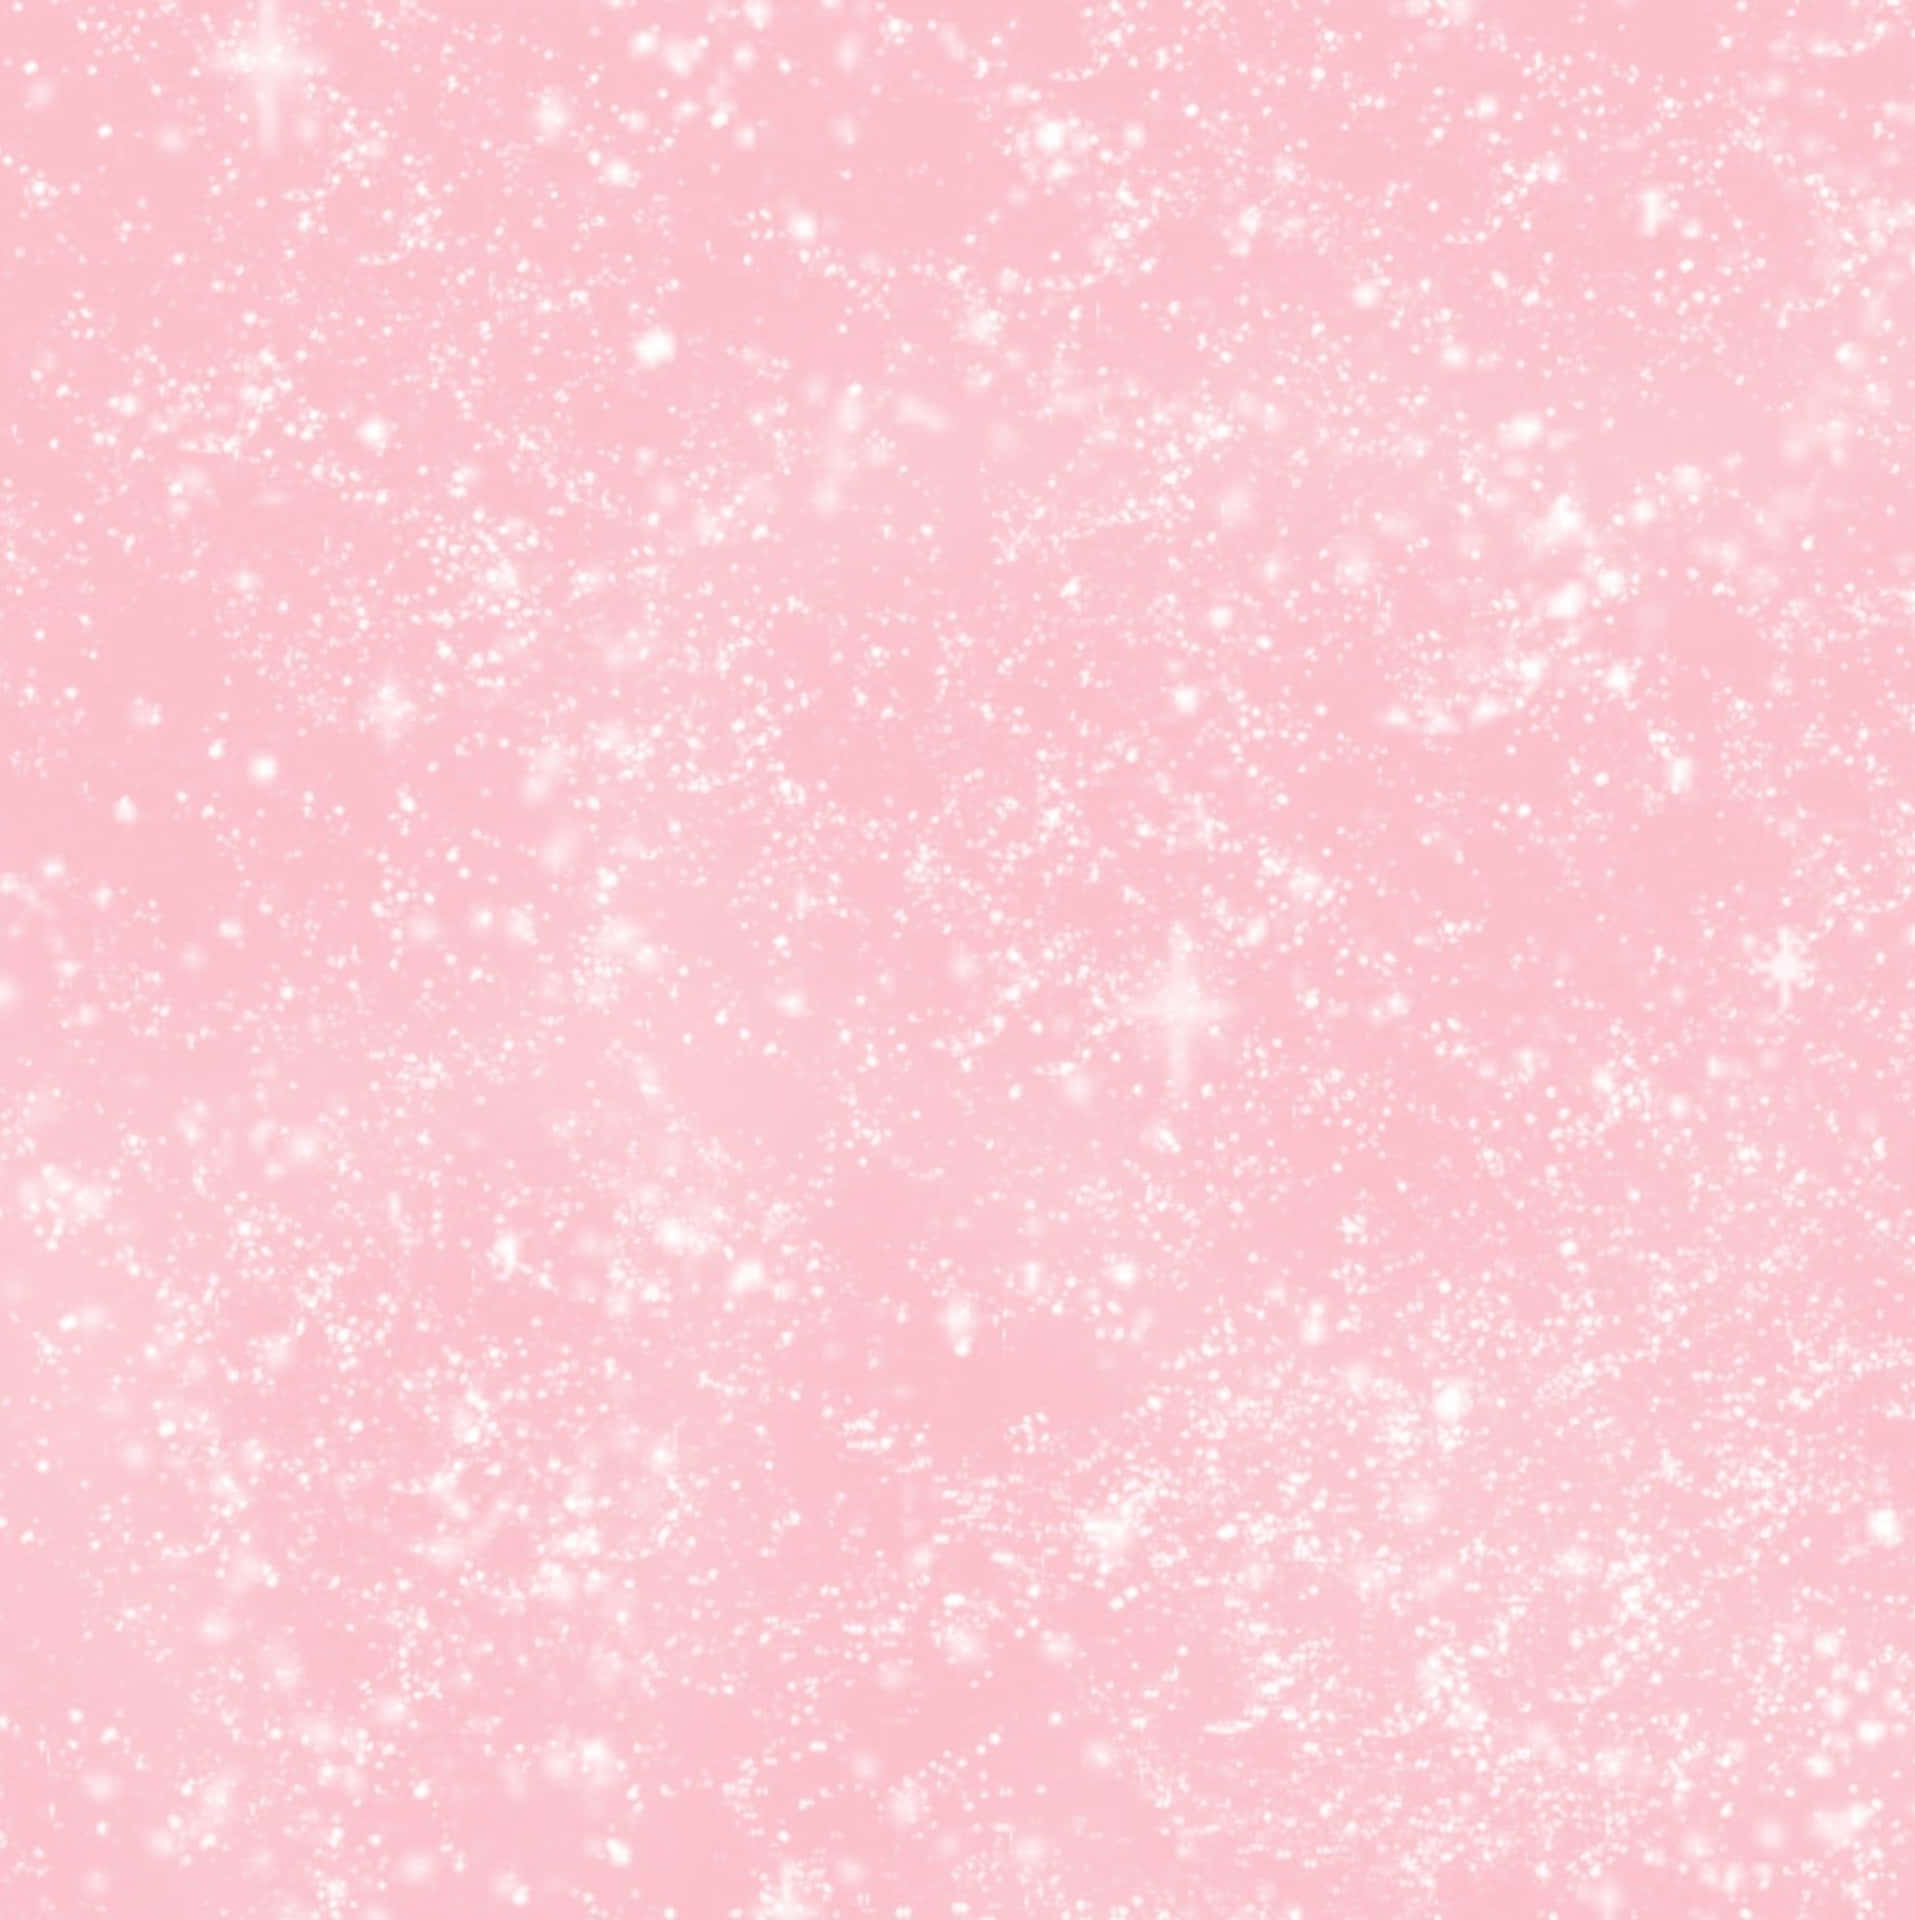 Kollain Den Här Ljusa, Vackra Baby Pink-estetika Bakgrundsbilden! Wallpaper